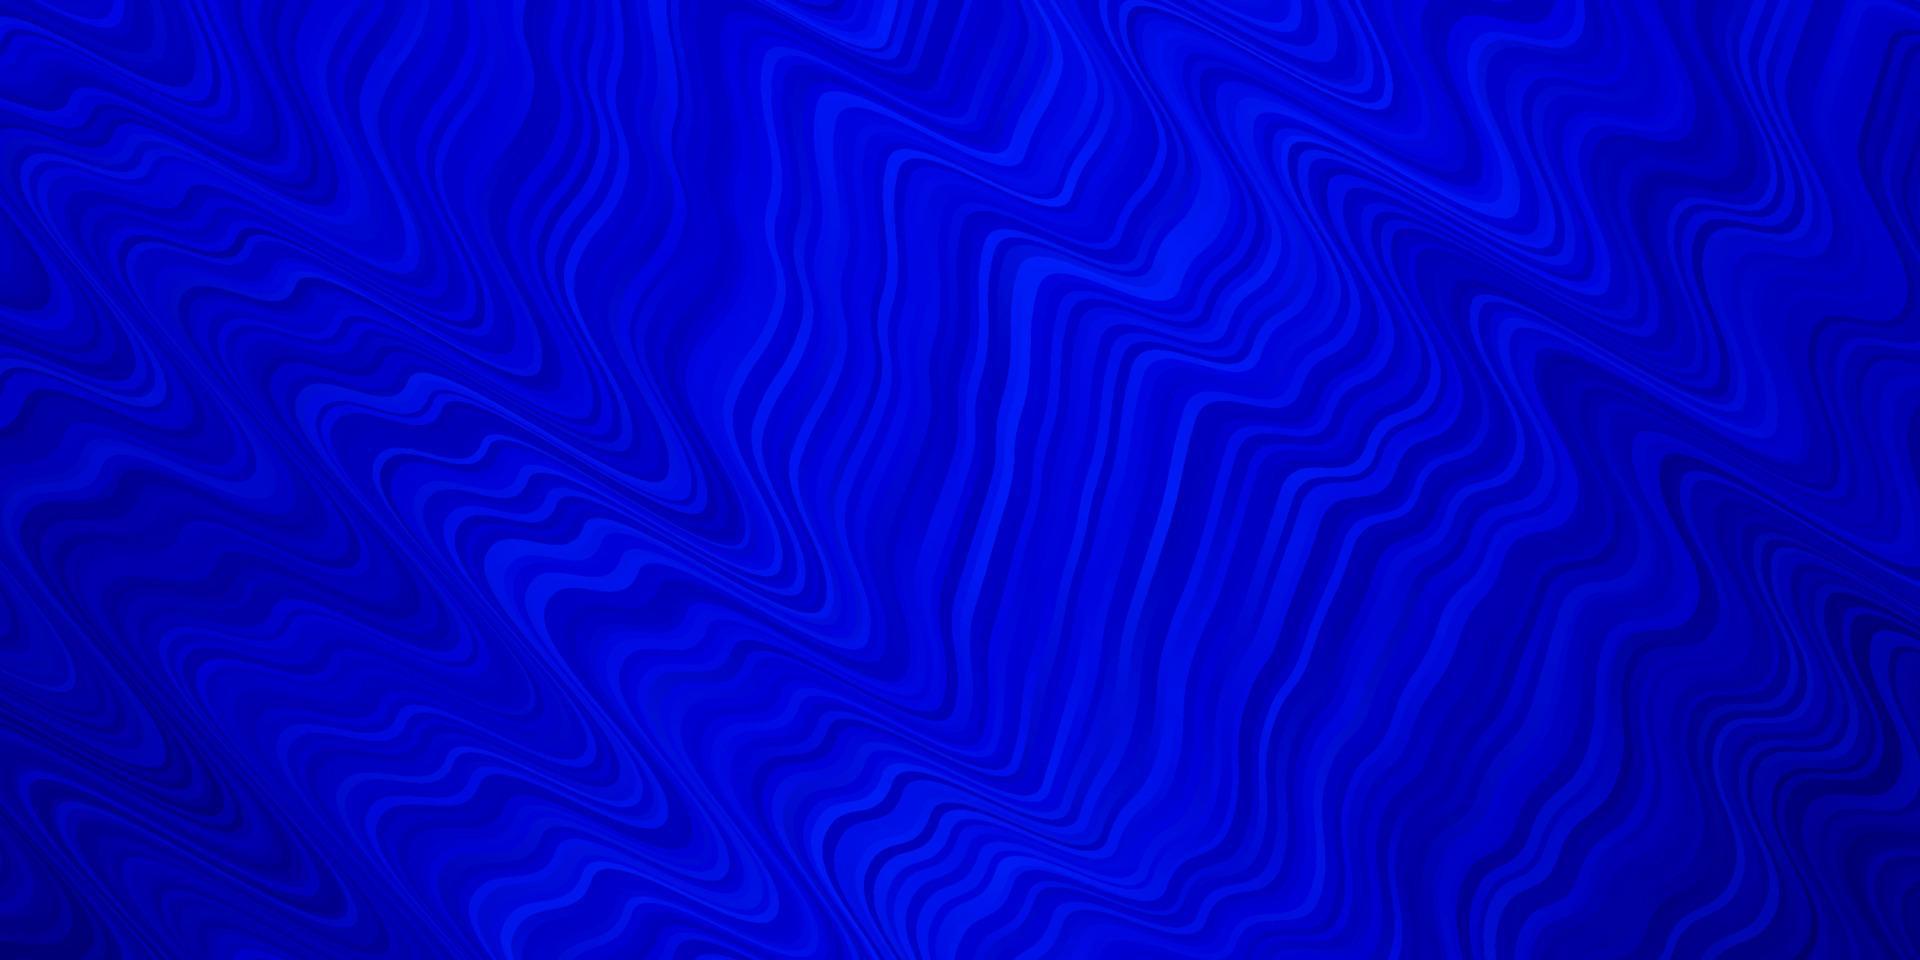 padrão de vetor azul claro com linhas irônicas.